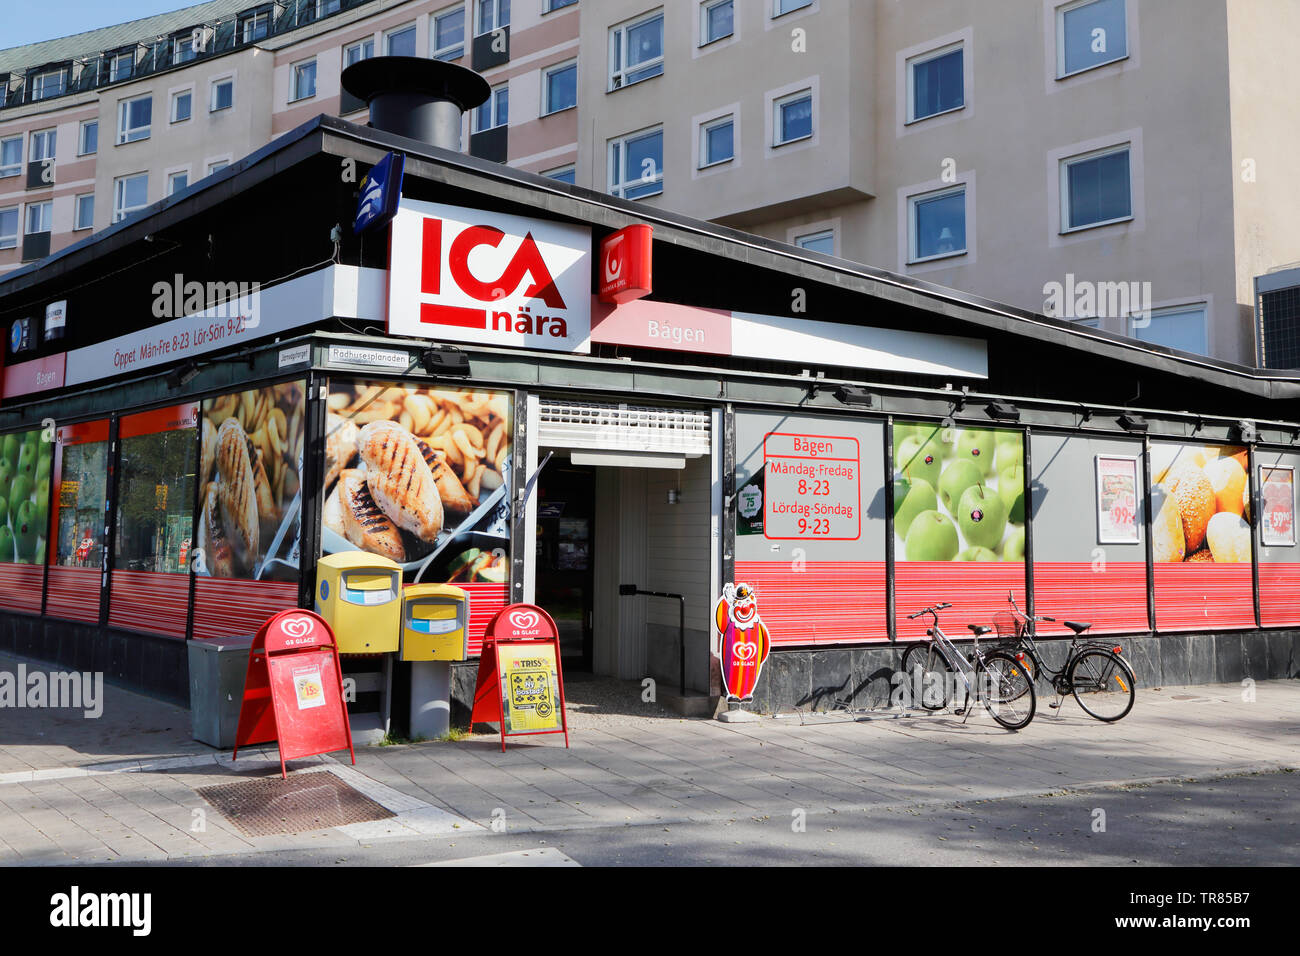 Umea, Schweden - 24. Juli 2016: Außenansicht des ICA-Nara Bagen Supermarkt in der Nähe des Bahnhofs gelegen. Stockfoto